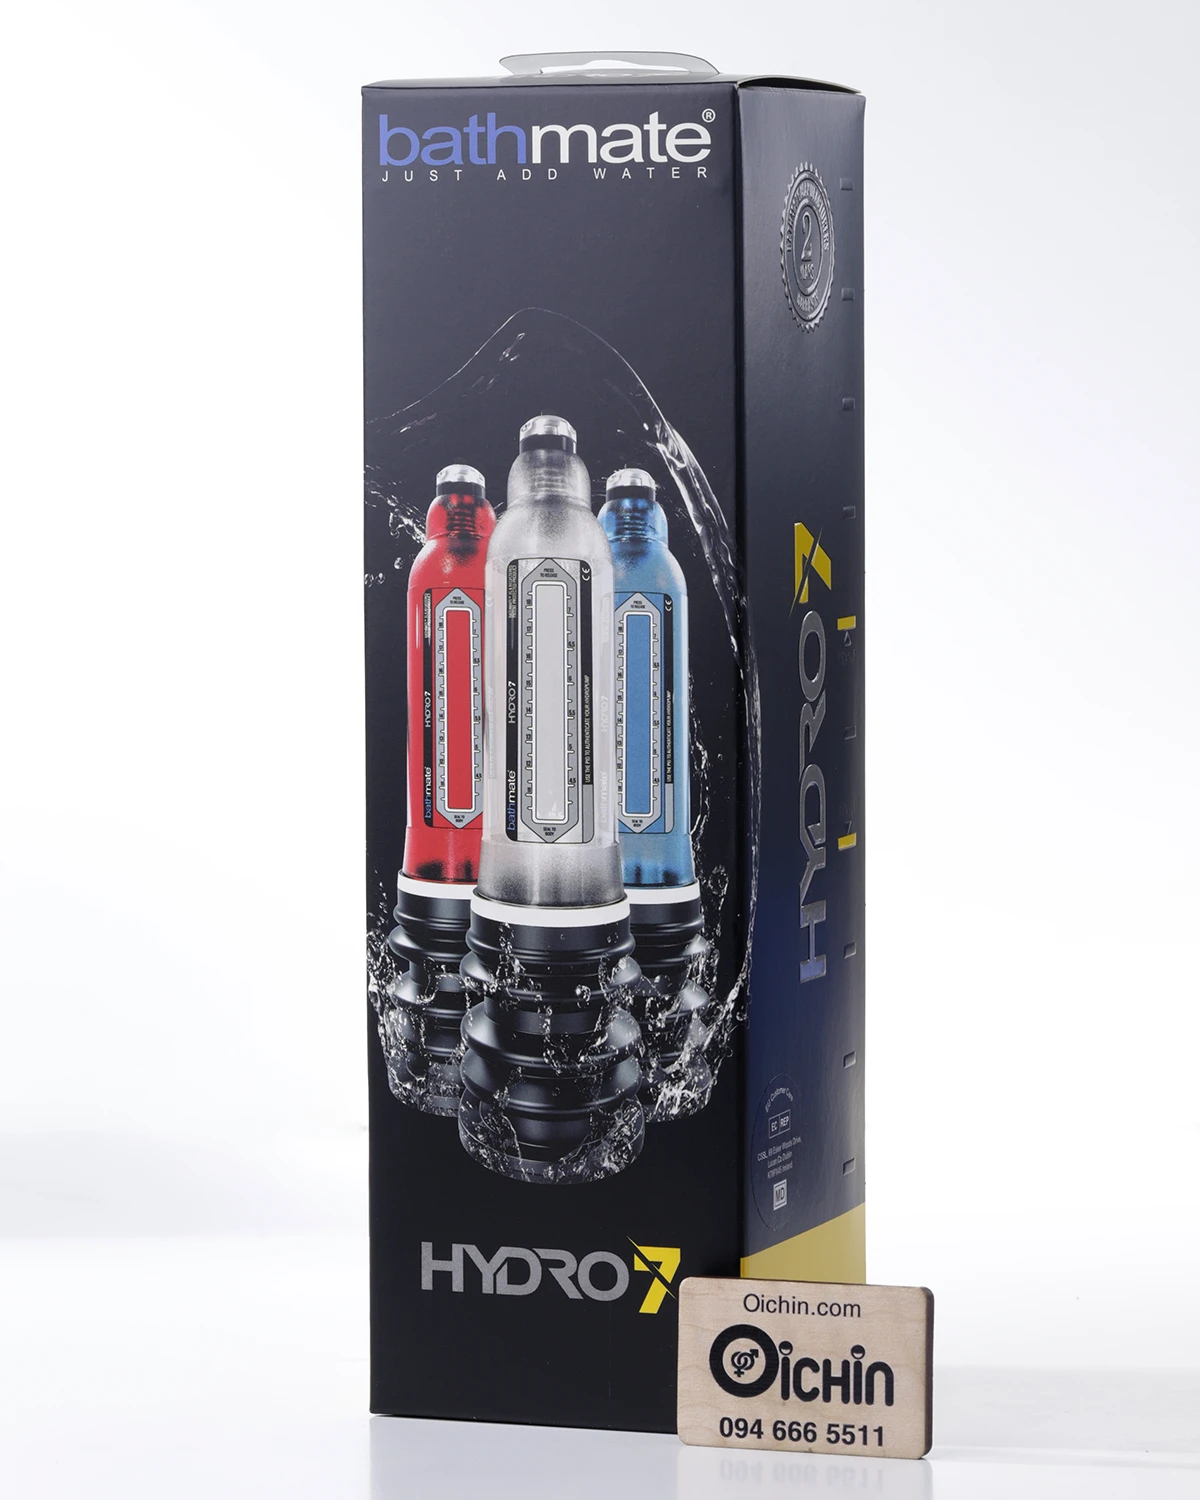 Máy tập Bathmate giúp dương vật to khỏe, rắn chắc Hydro 7 Crystal Clear